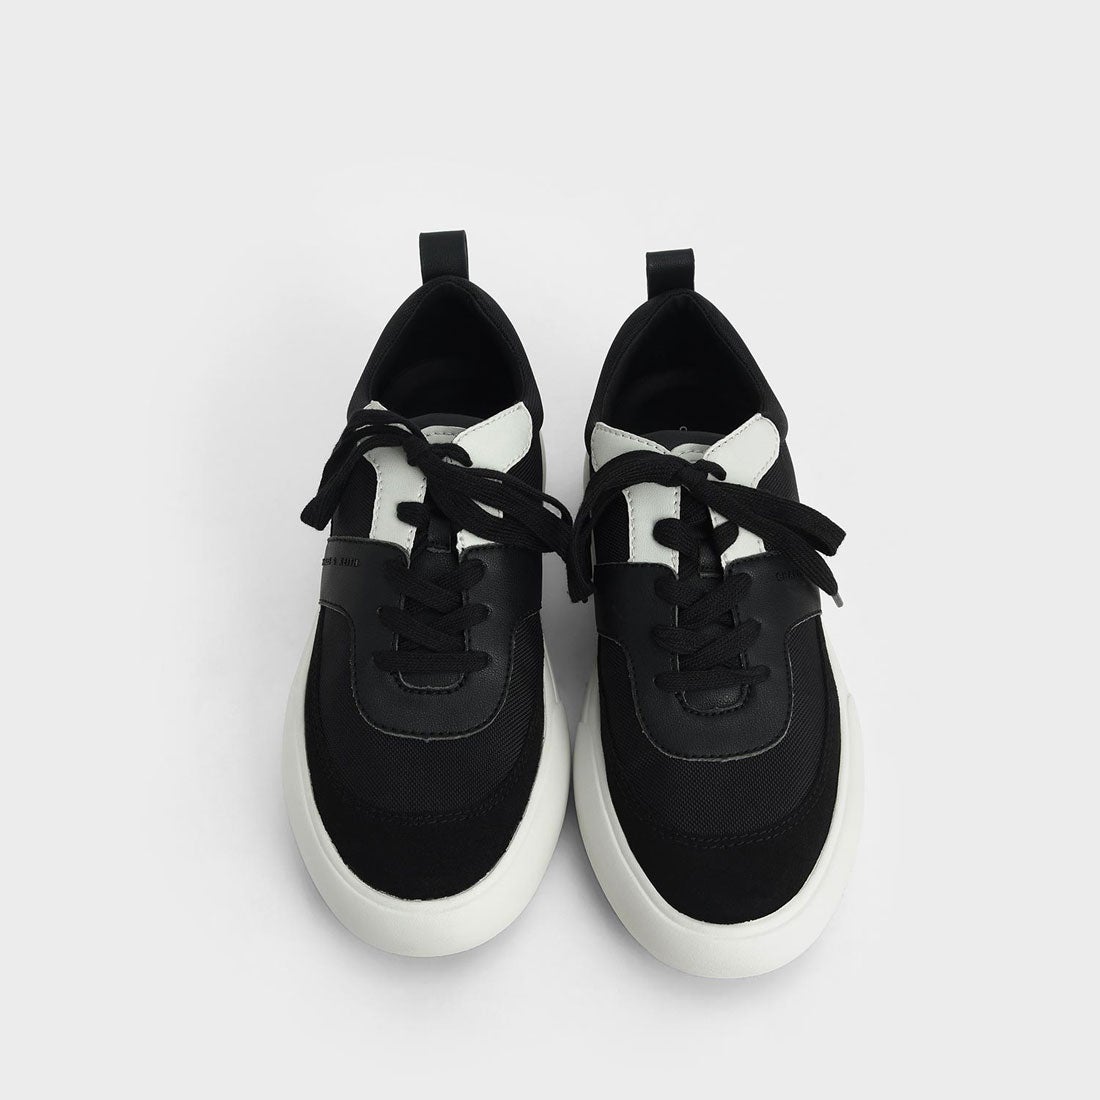 テクスチャード ロウトップスニーカー / Textured Low Top Sneakers （Black）